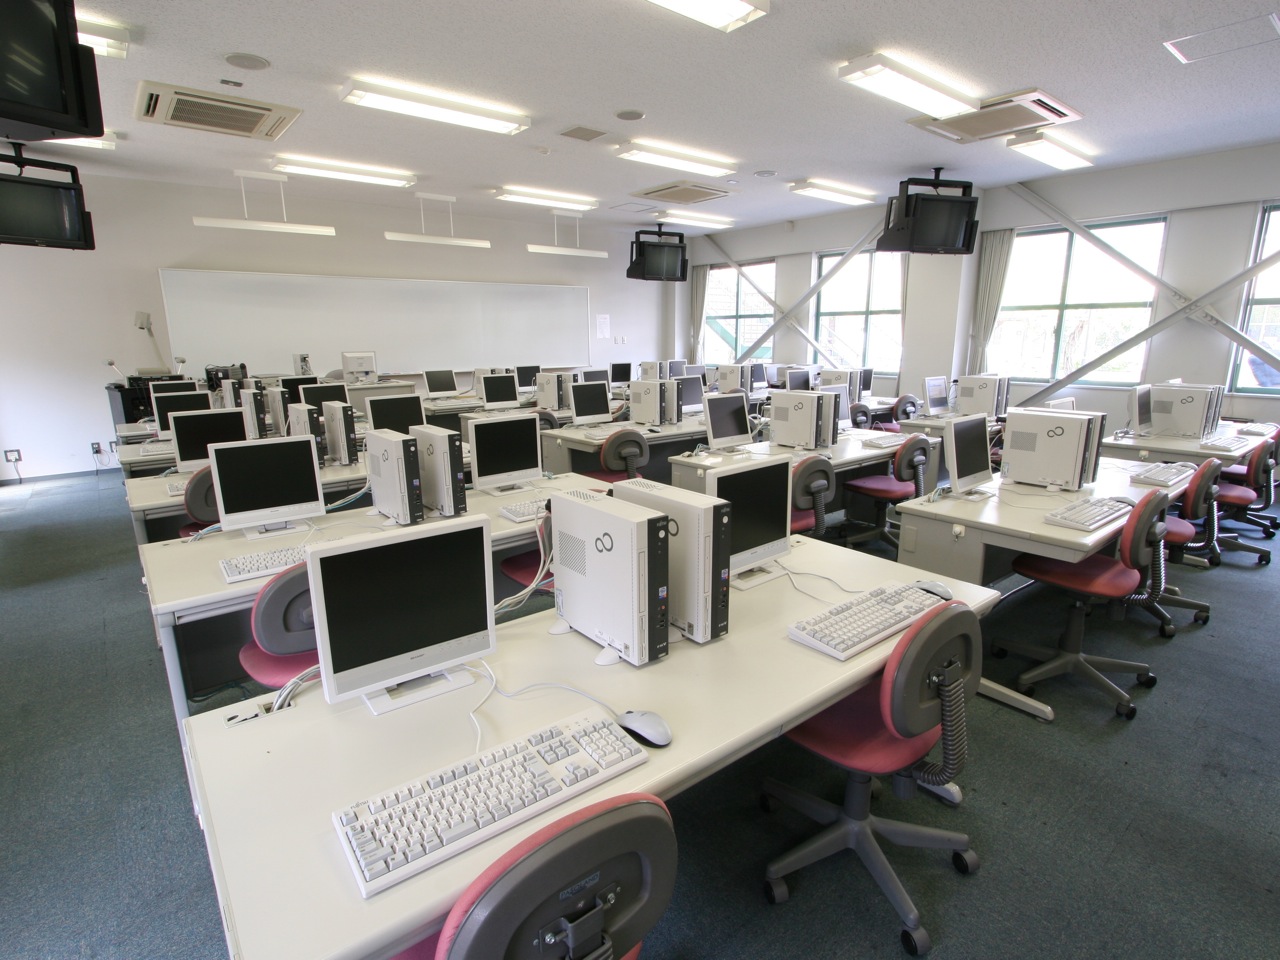 マルチメディア教室：ズラリと並んだパソコン。ここはコンピュータの学校かと見間違うばかりです。学生はいつでも自由に使うことができます。